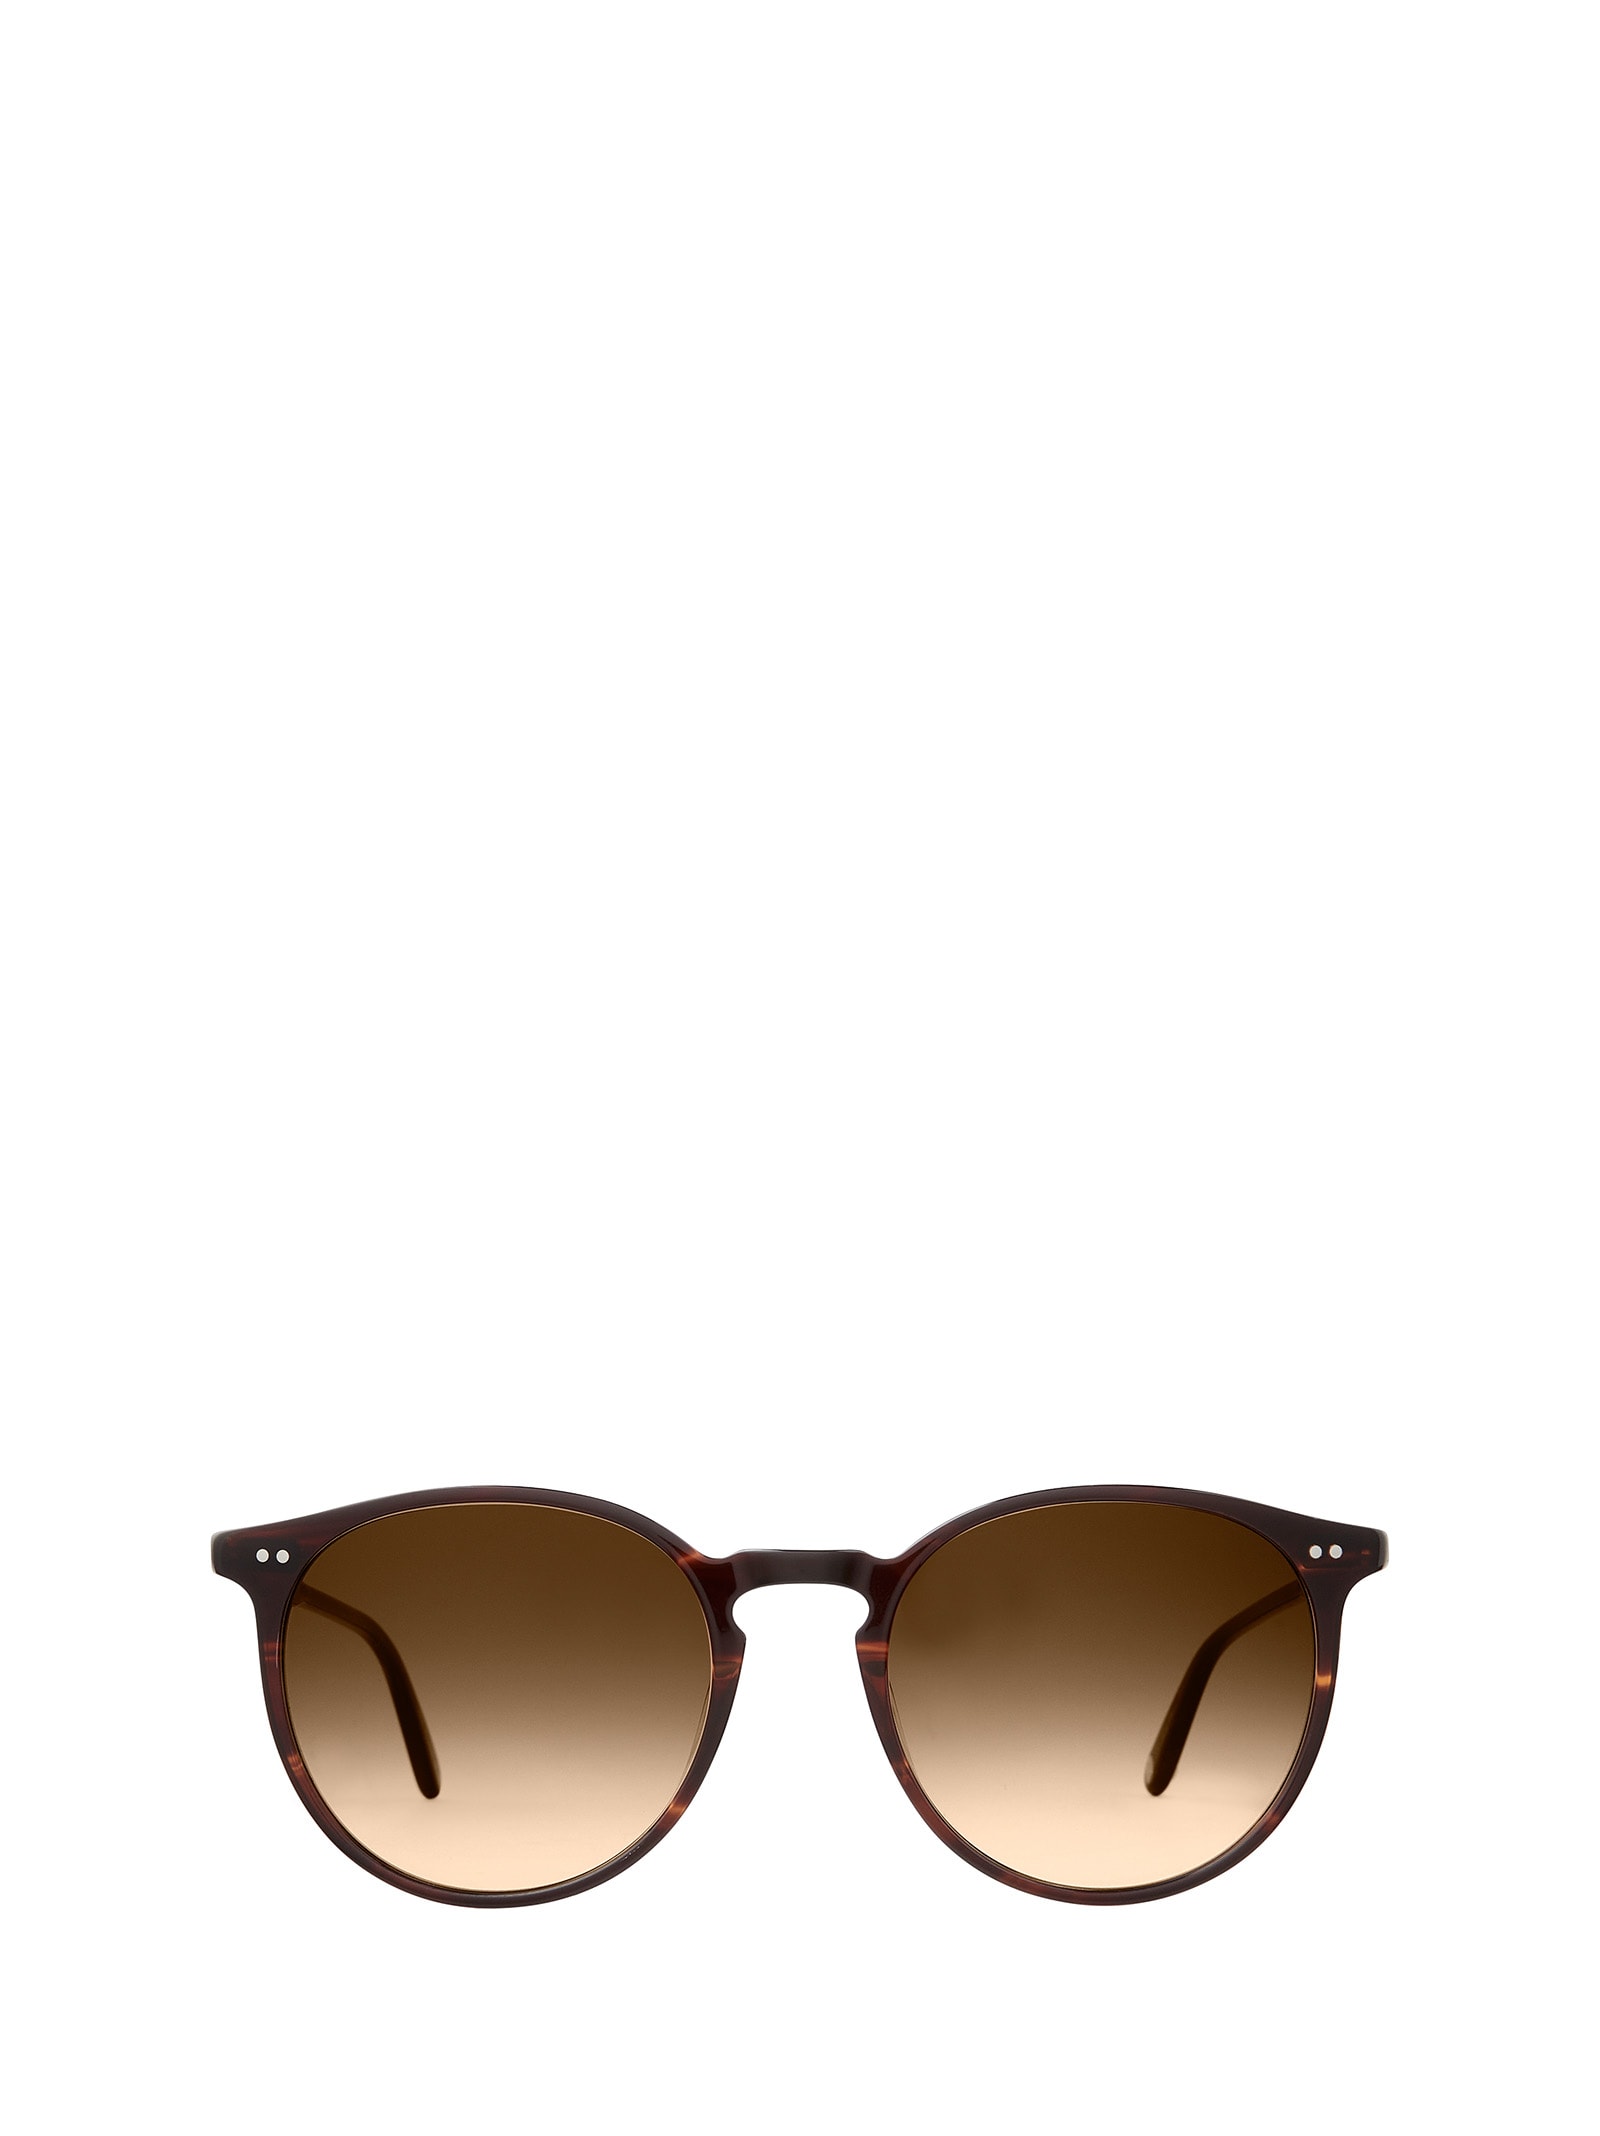 Morningside Sun Redwood Tortoise/semi-flat Brunette Gradient Sunglasses